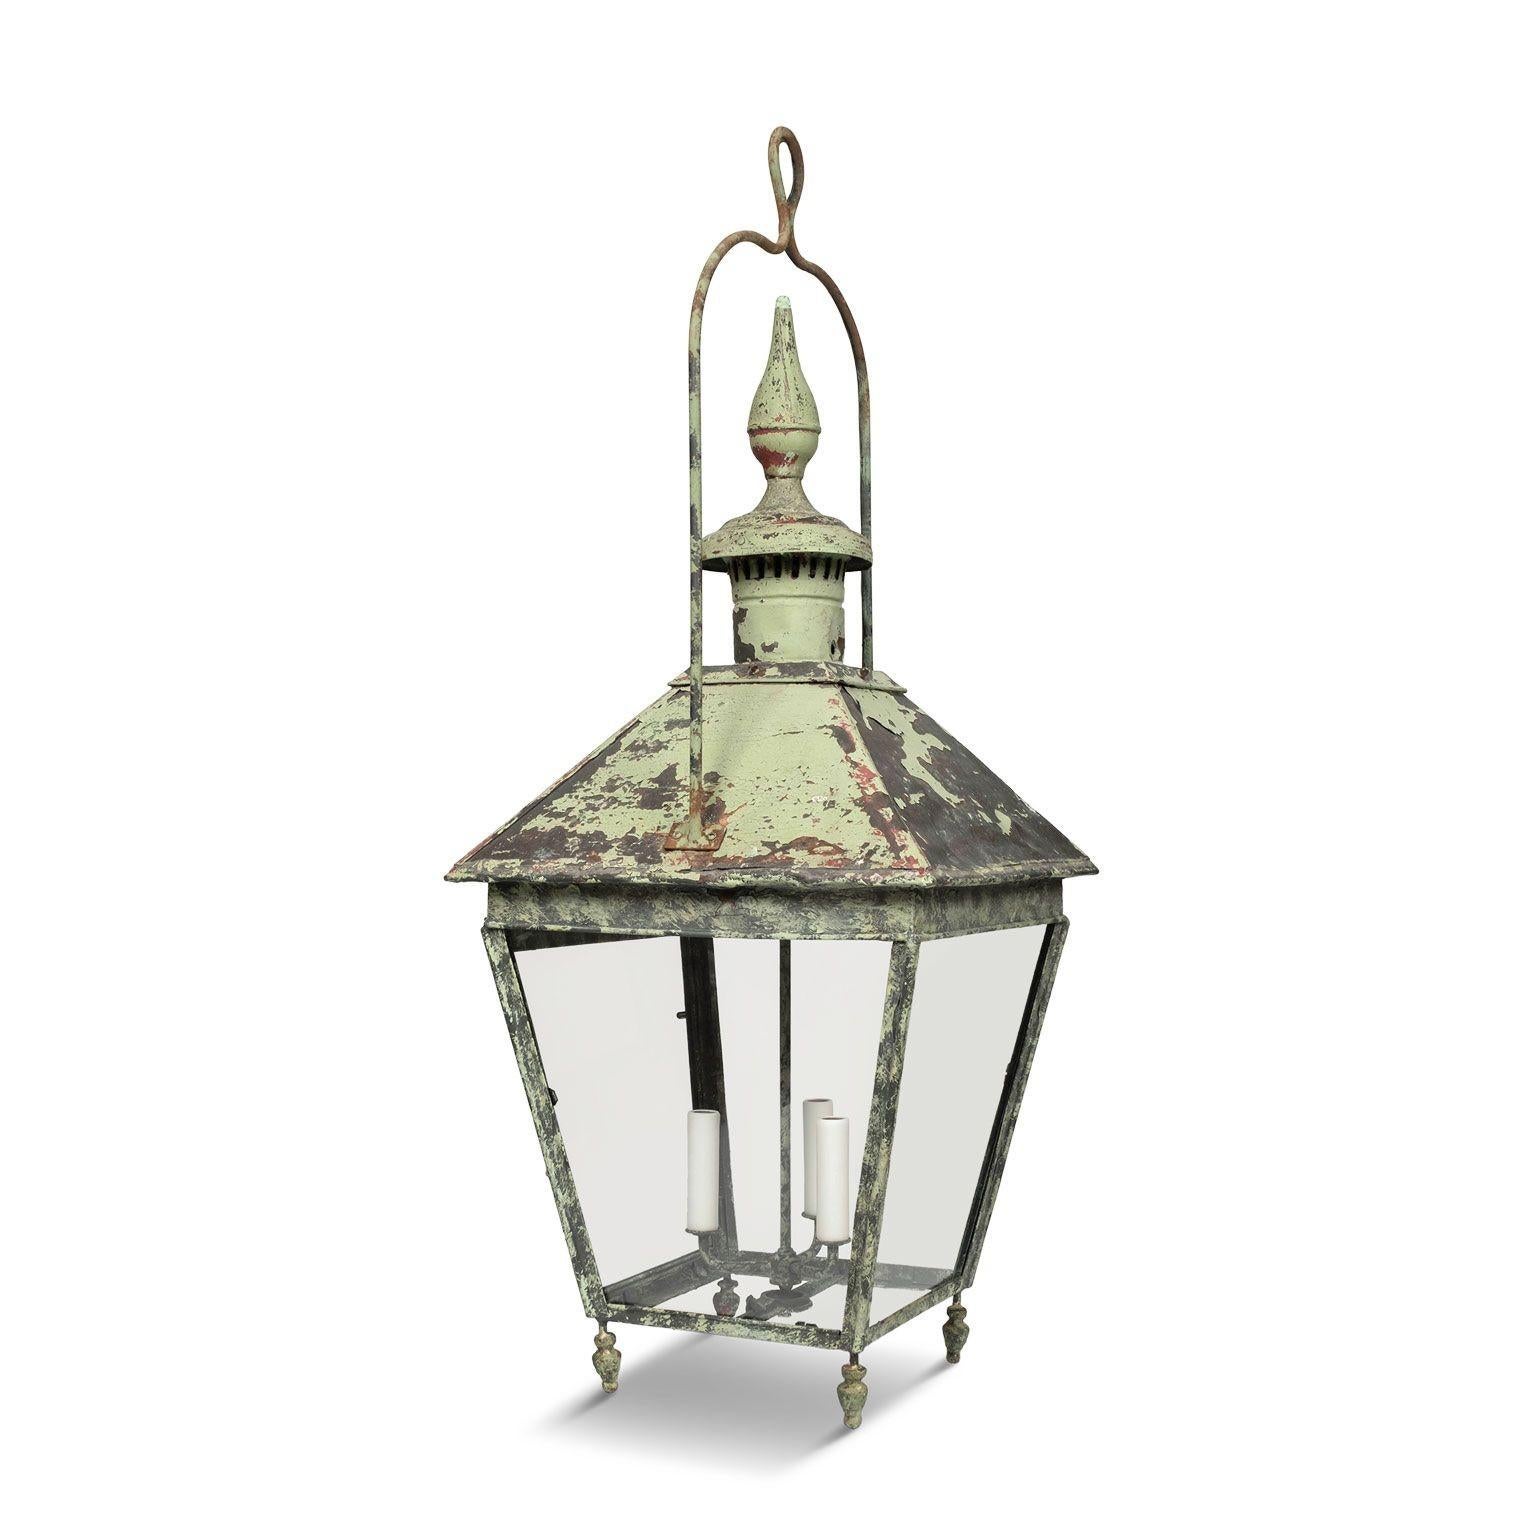 Lanterne du XIXe siècle en cuivre peint en vert et en verre, circa 1850-1889. Vestiges de peinture vert clair sur patine naturelle vert-de-gris et gris tacheté et belle, grande échelle. A l'origine, il s'agissait d'une lanterne de rue éclairée au